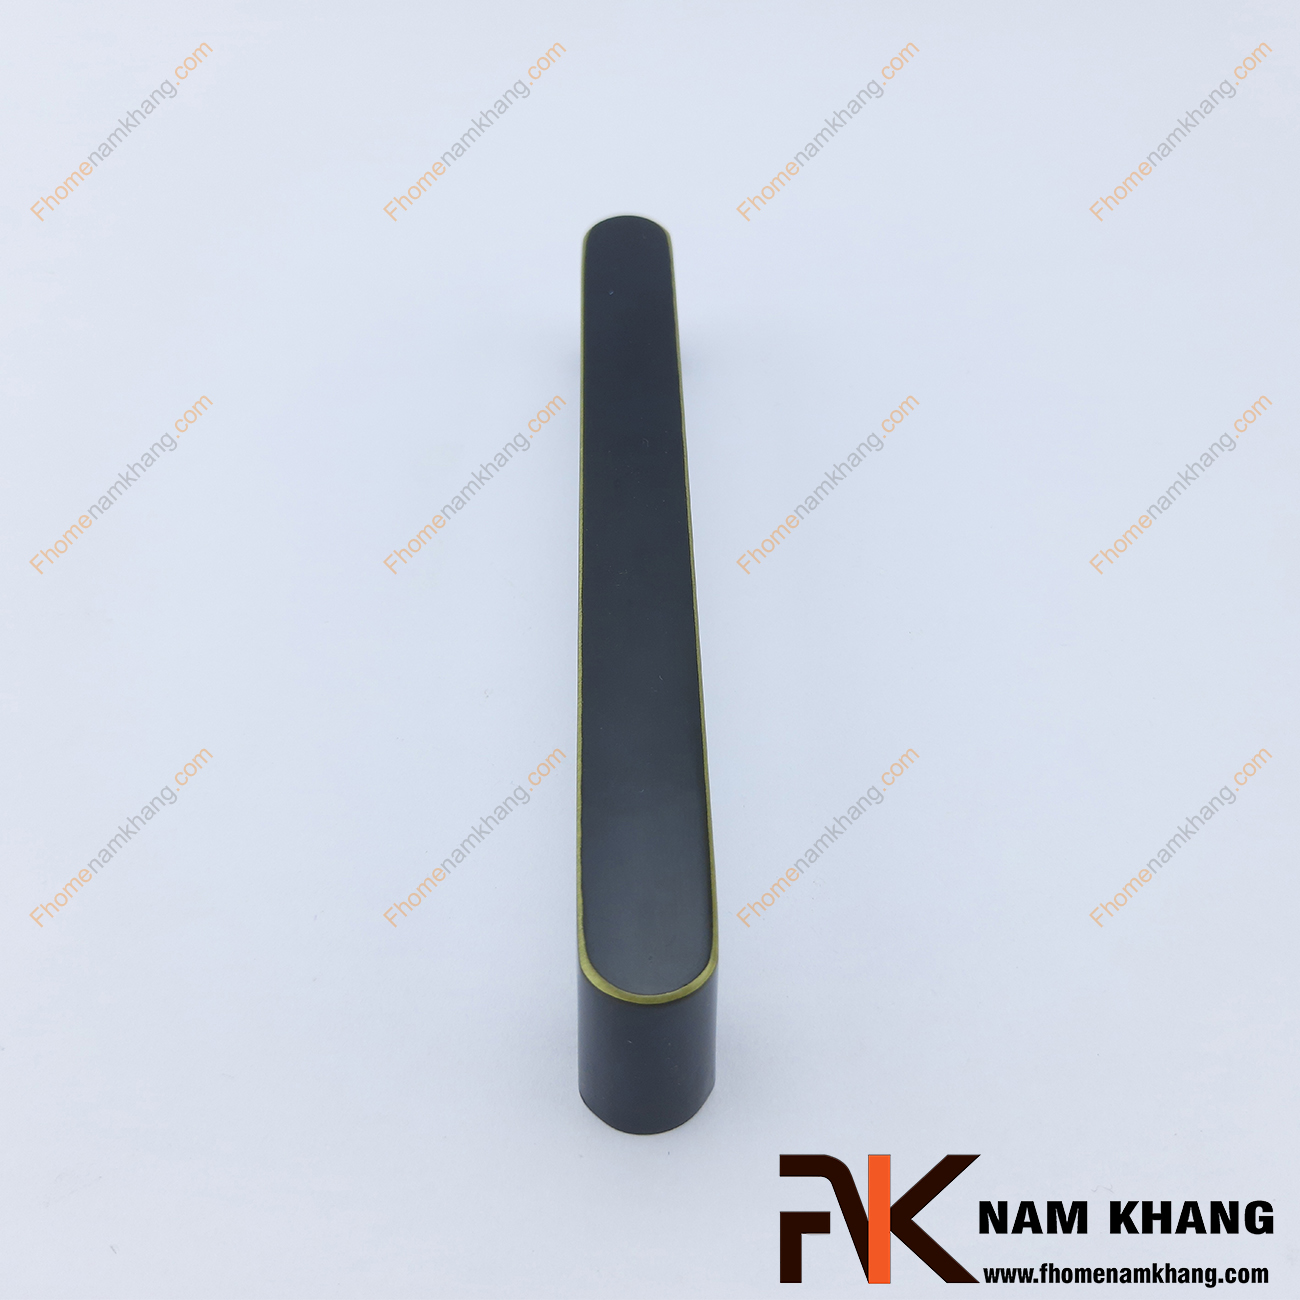 Tay nắm tủ dạng thanh dẹp màu đen viền vàng NK421-DV có thiết kế đơn giản với phần thân dẹp và phần đế hình bán trụ ở hai đầu của tay nắm